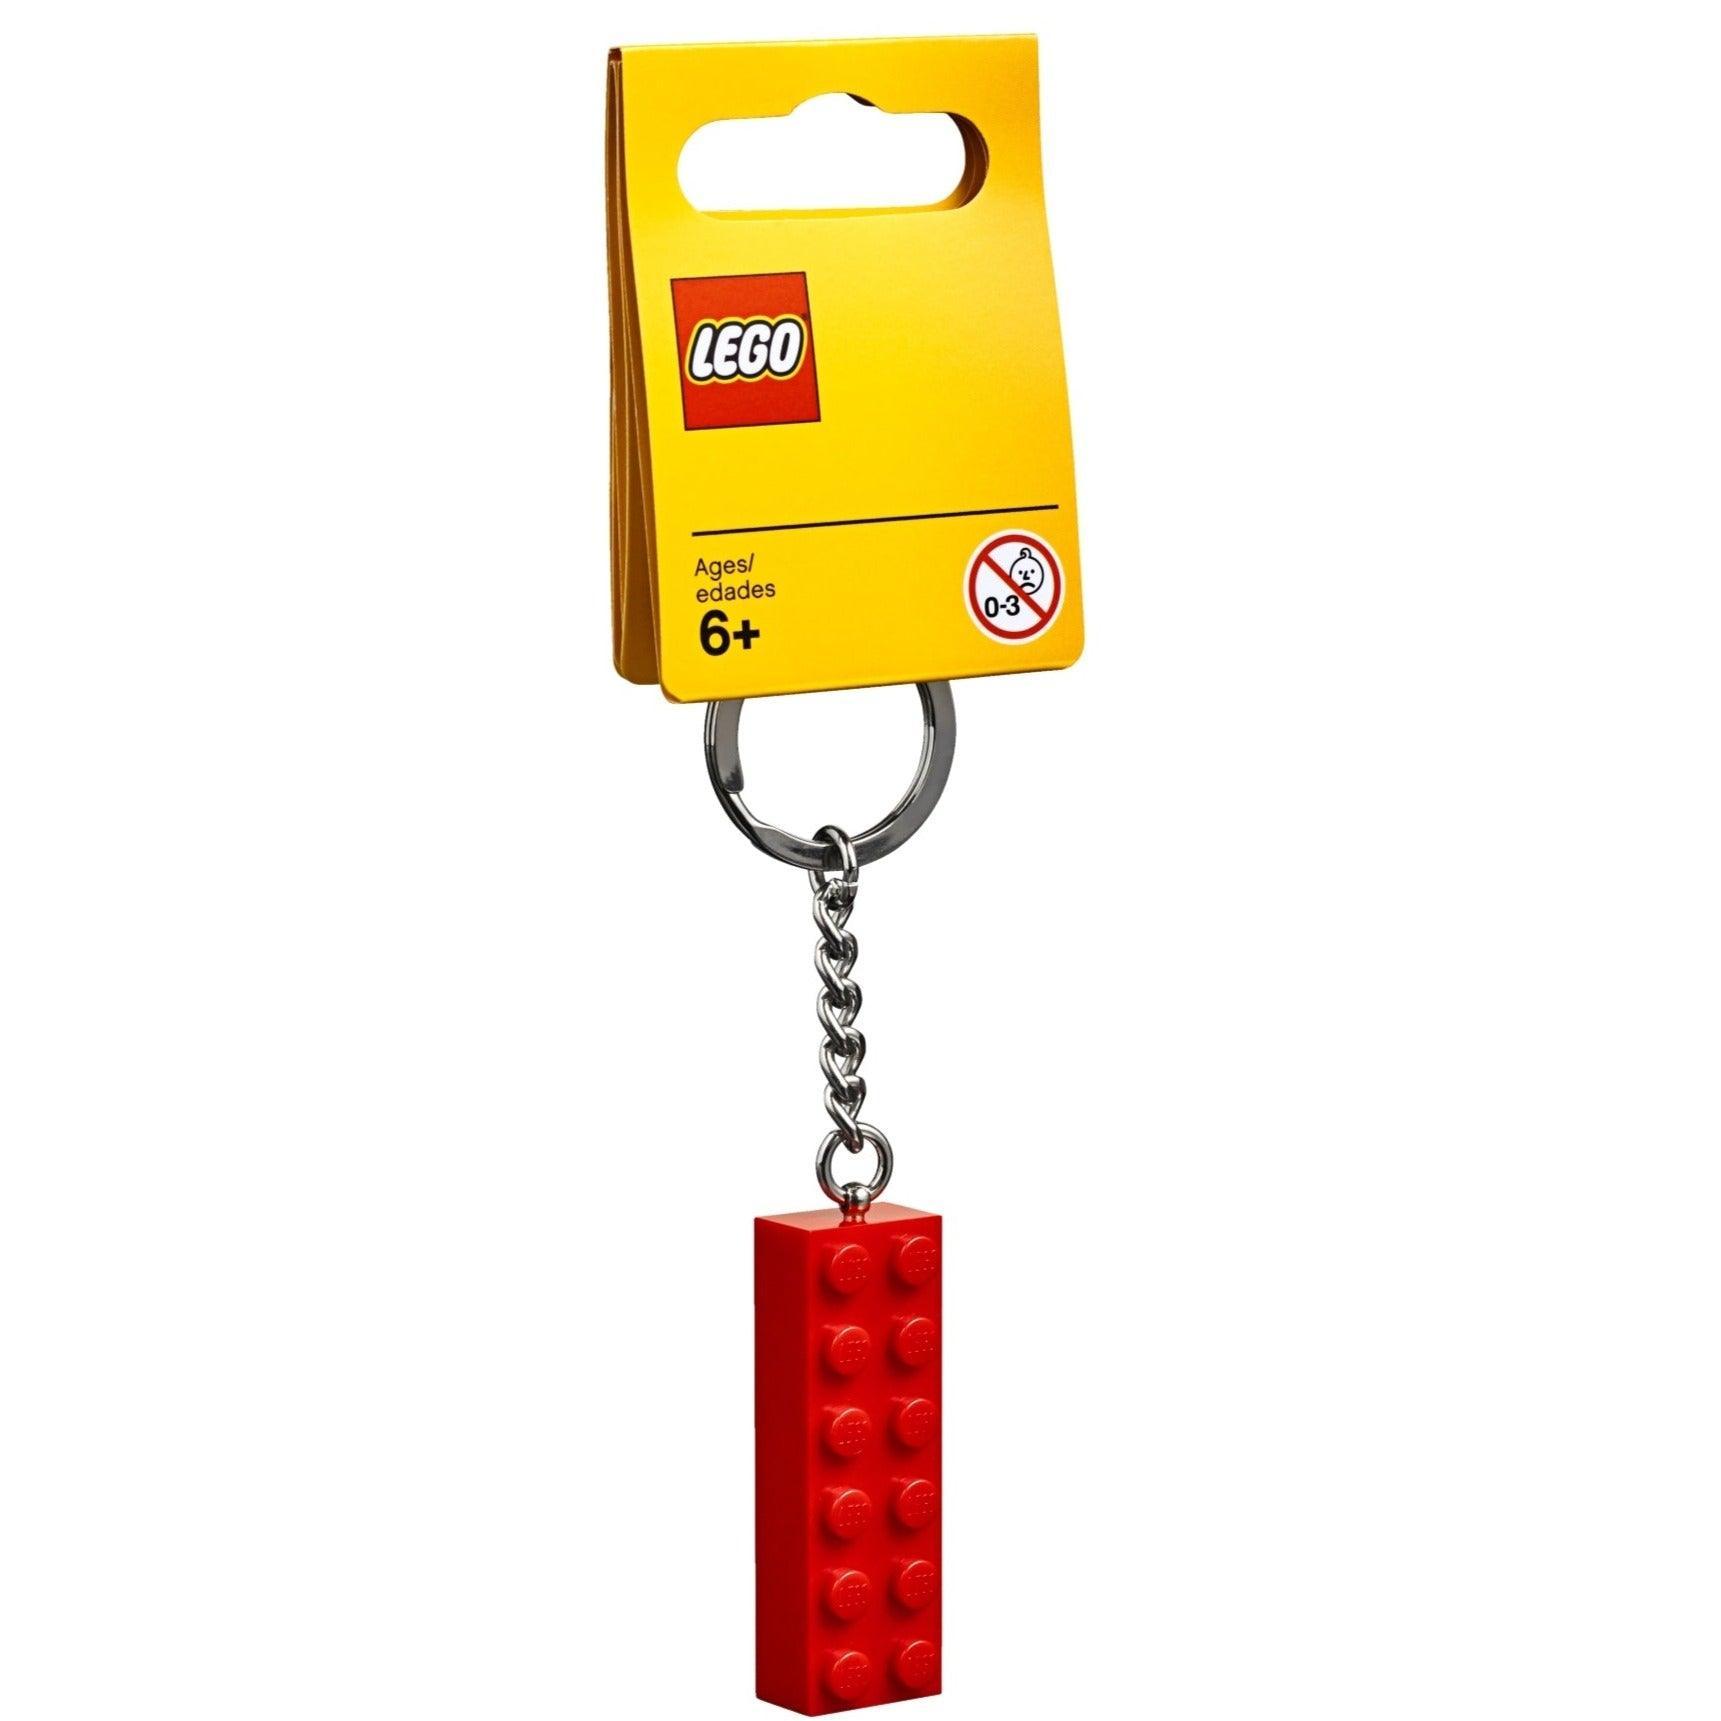 LEGO 2x6 Key Chain 853960 Gear LEGO Gear @ 2TTOYS LEGO €. 4.49